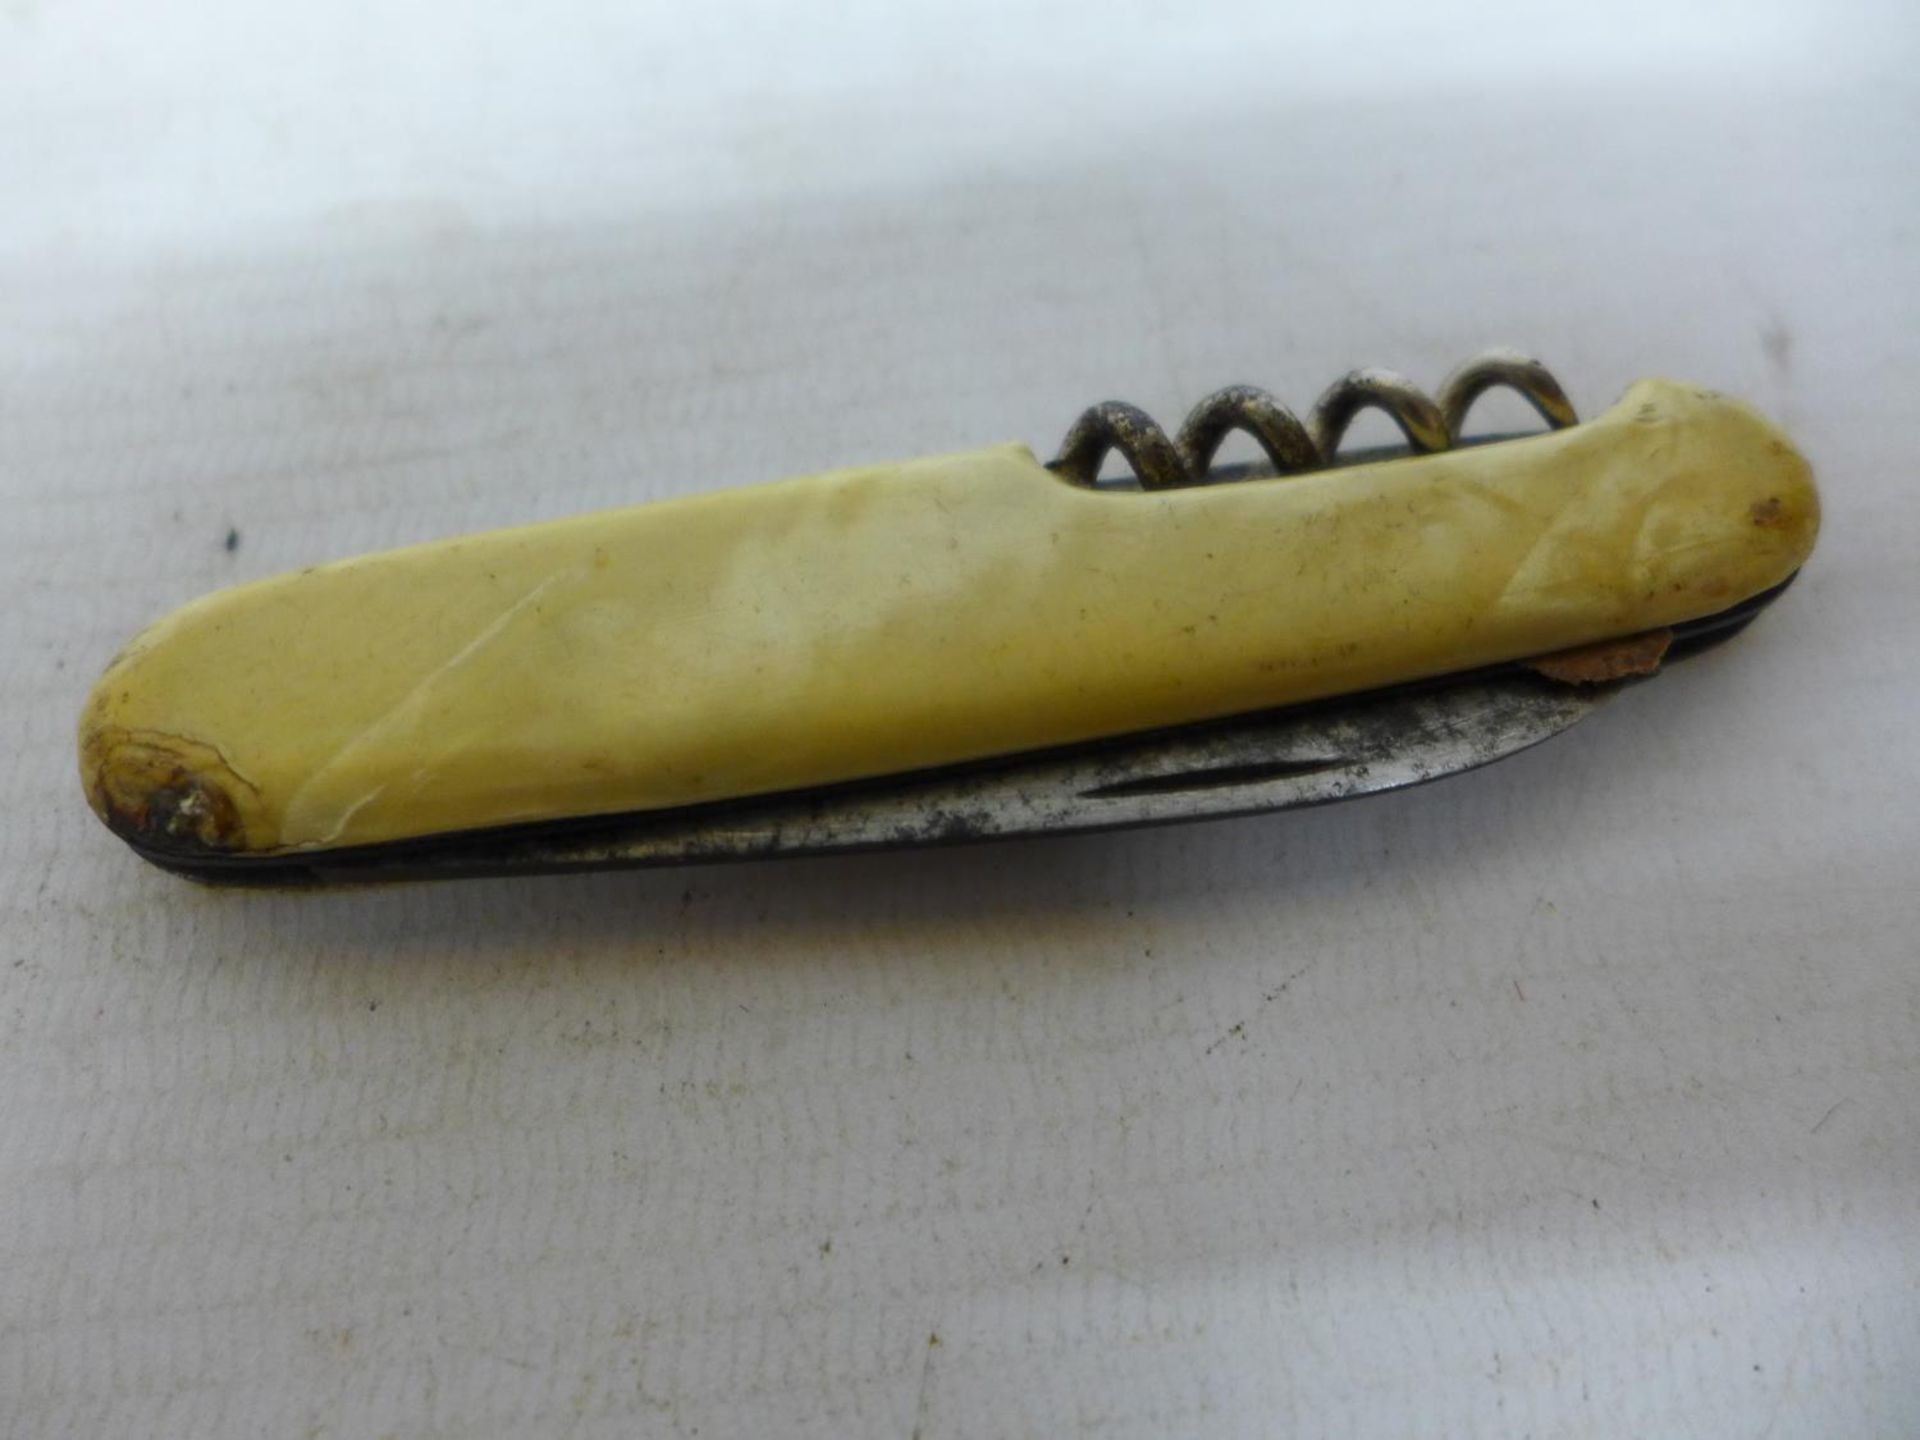 A VINTAGE GERMAN SOUVENIR POCKET KNIFE - Image 2 of 3